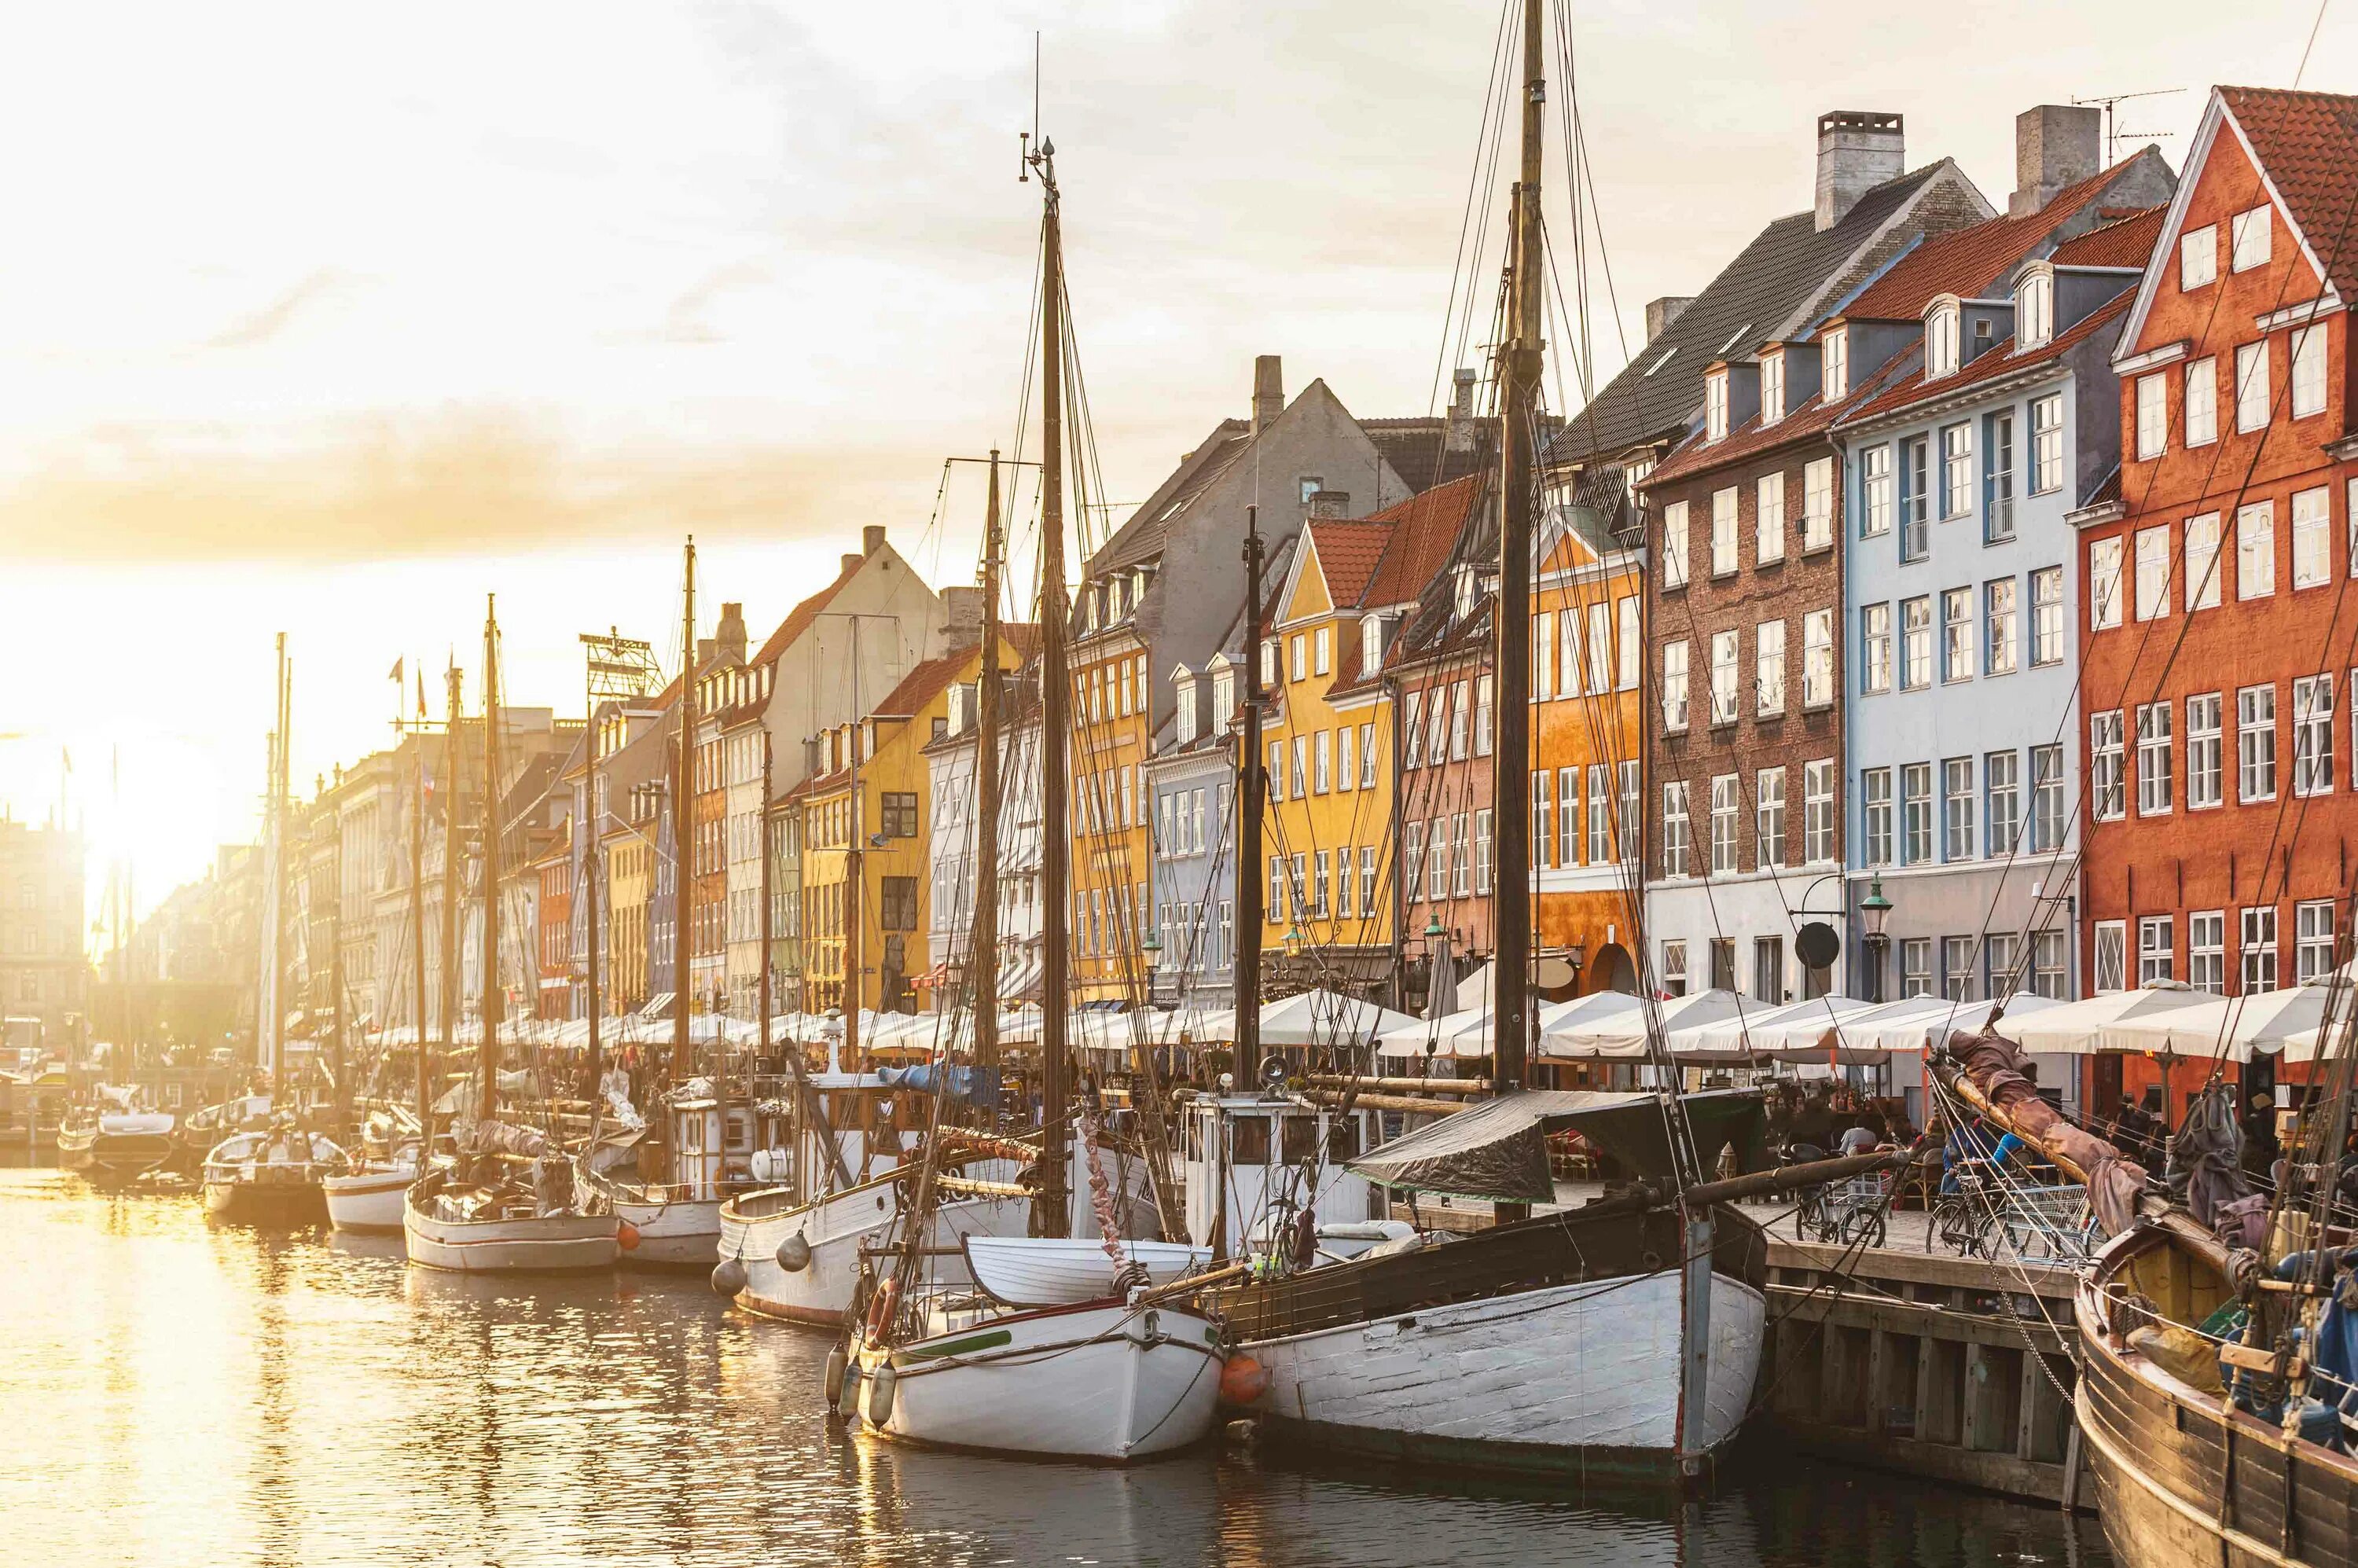 Время в копенгагене сейчас. Копенгаген набережная Ньюхавн. Копенгаген порт. Исторические здания Копенгагена.